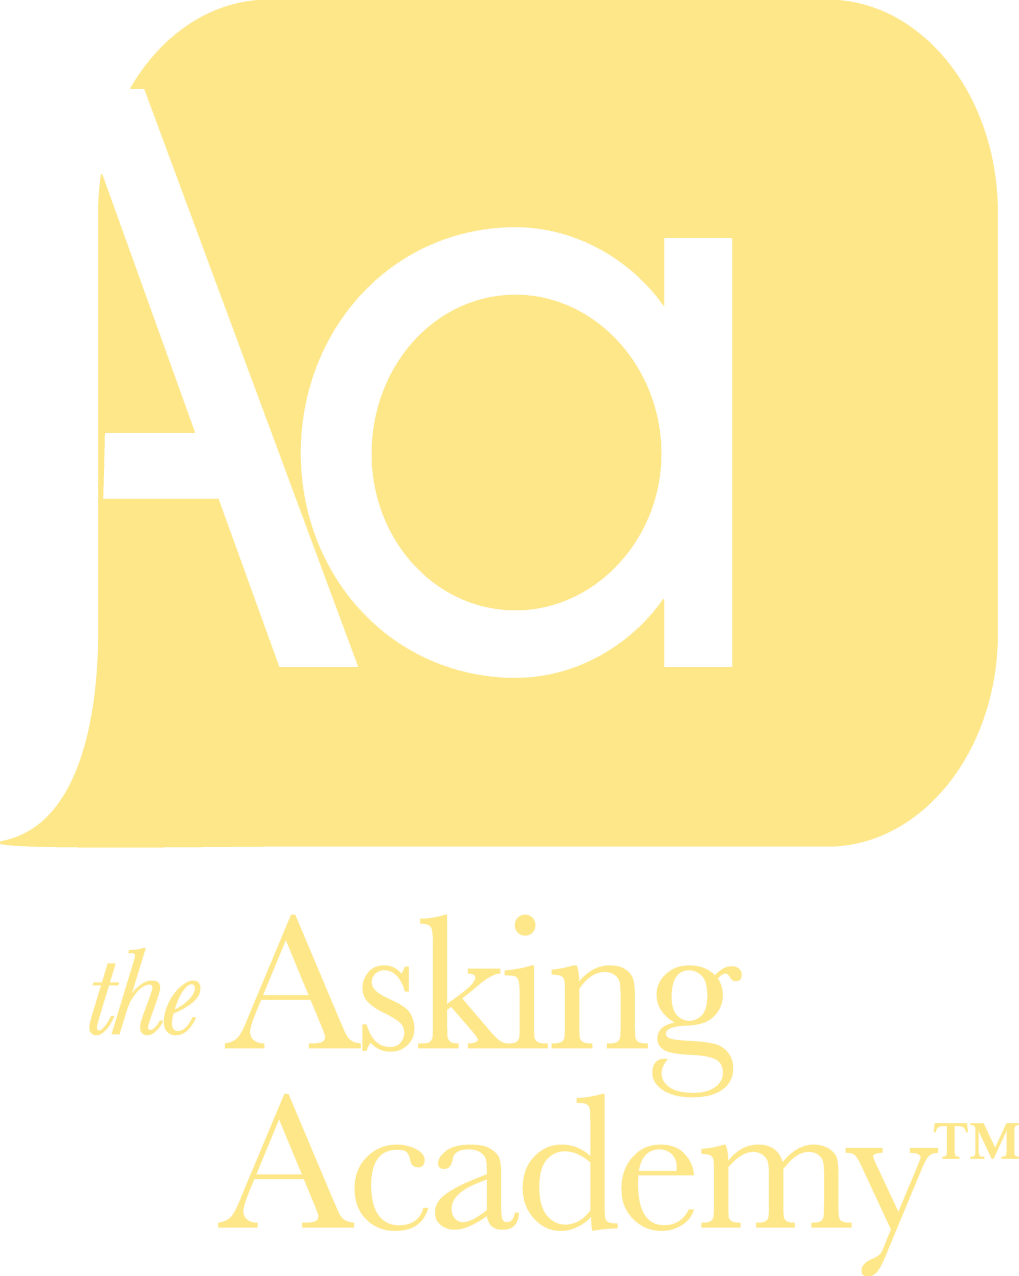 Asking Academy logo.